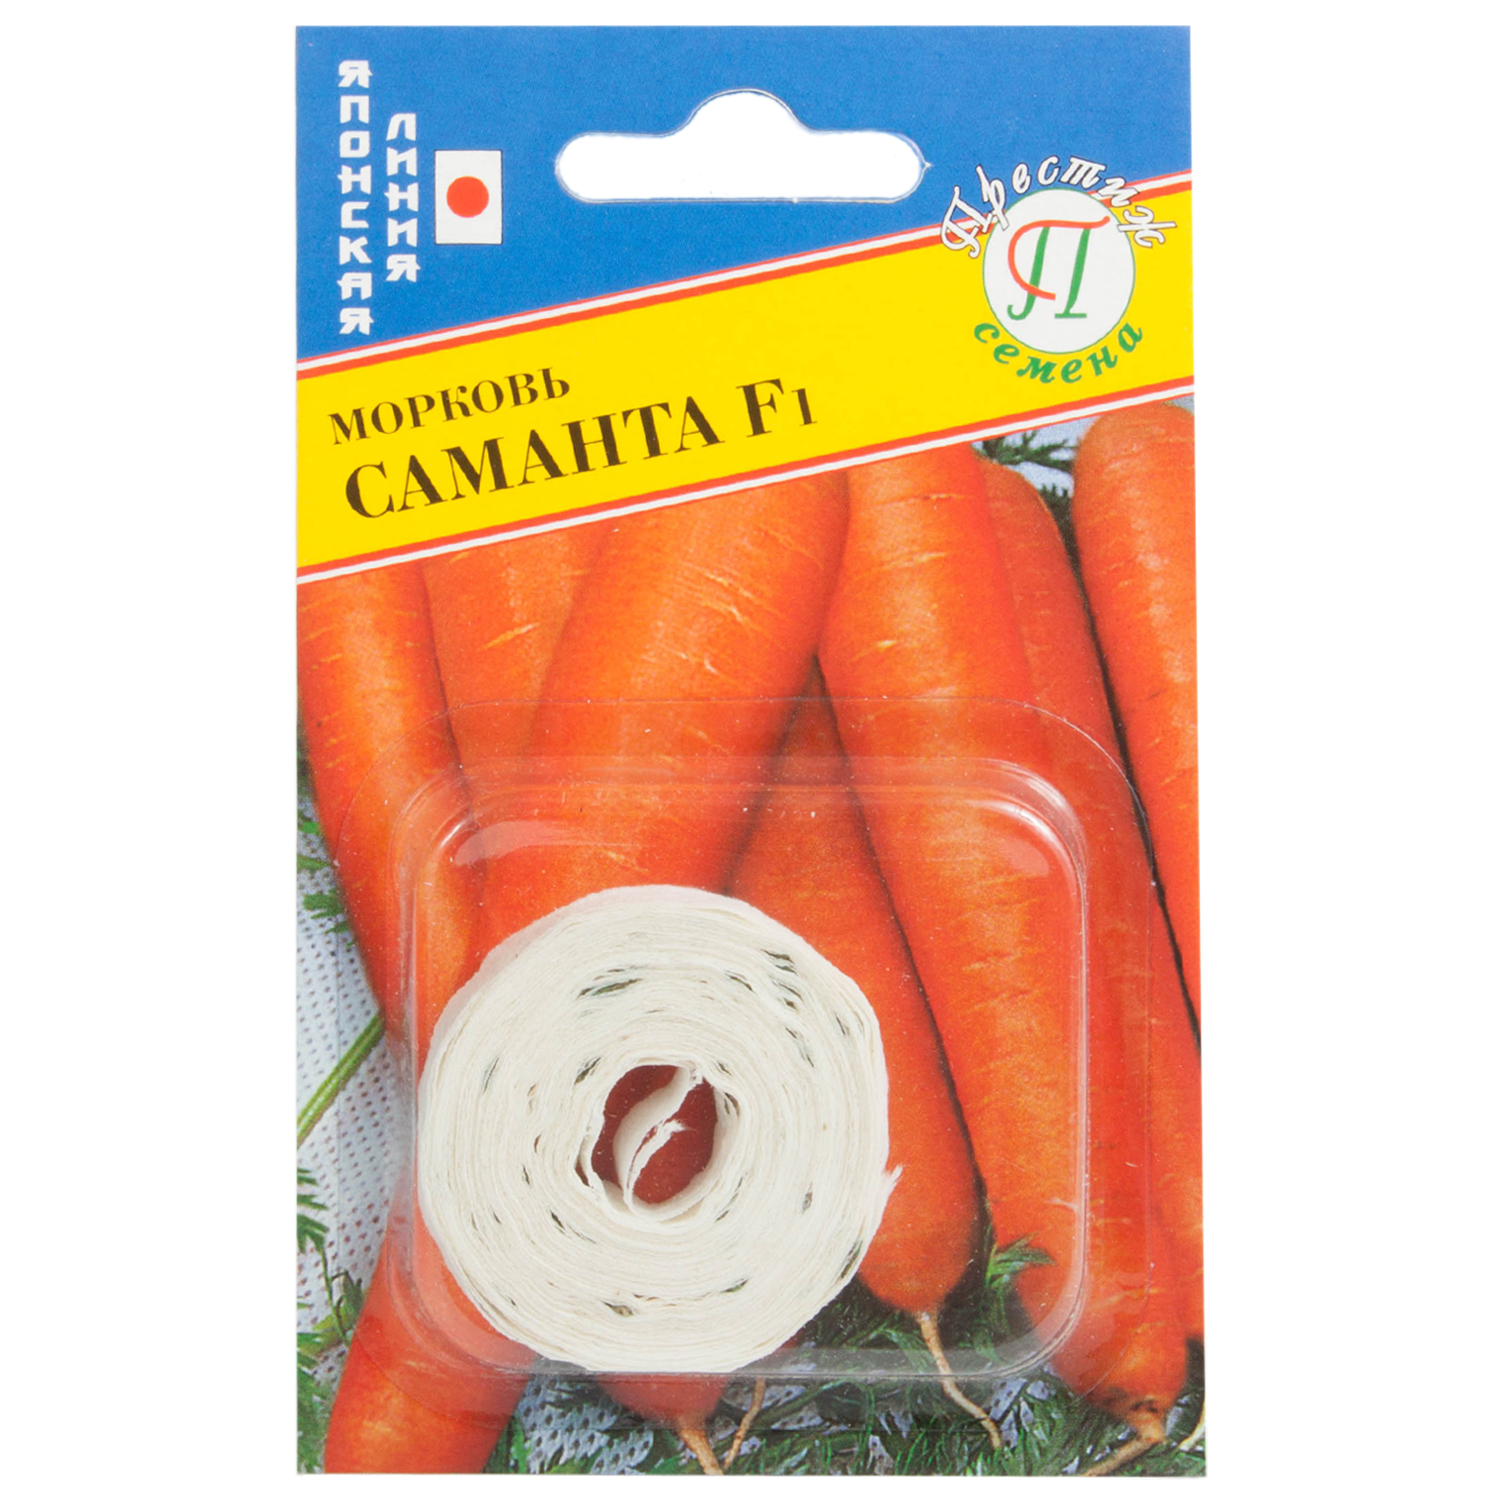 Морковь на ленте. Семена моркови на ленте. Лучшие семена моркови на ленте. Морковные ленточки. Морковь на ленте купить